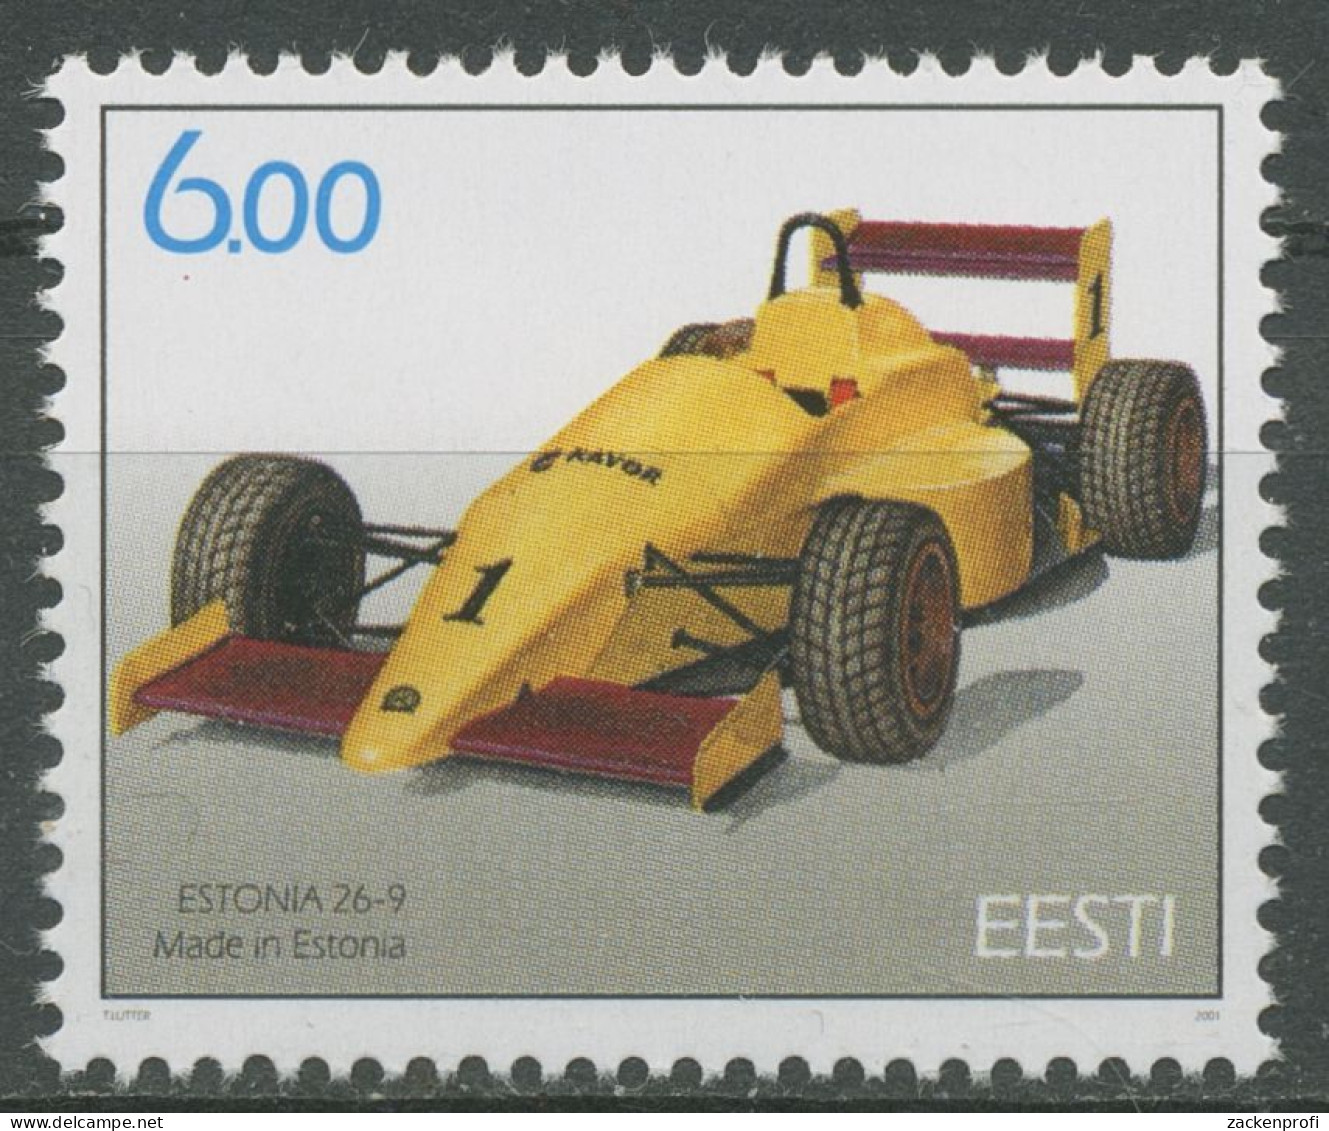 Estland 2001 Motorsport Rennwagen Estonia 420 Postfrisch - Estland